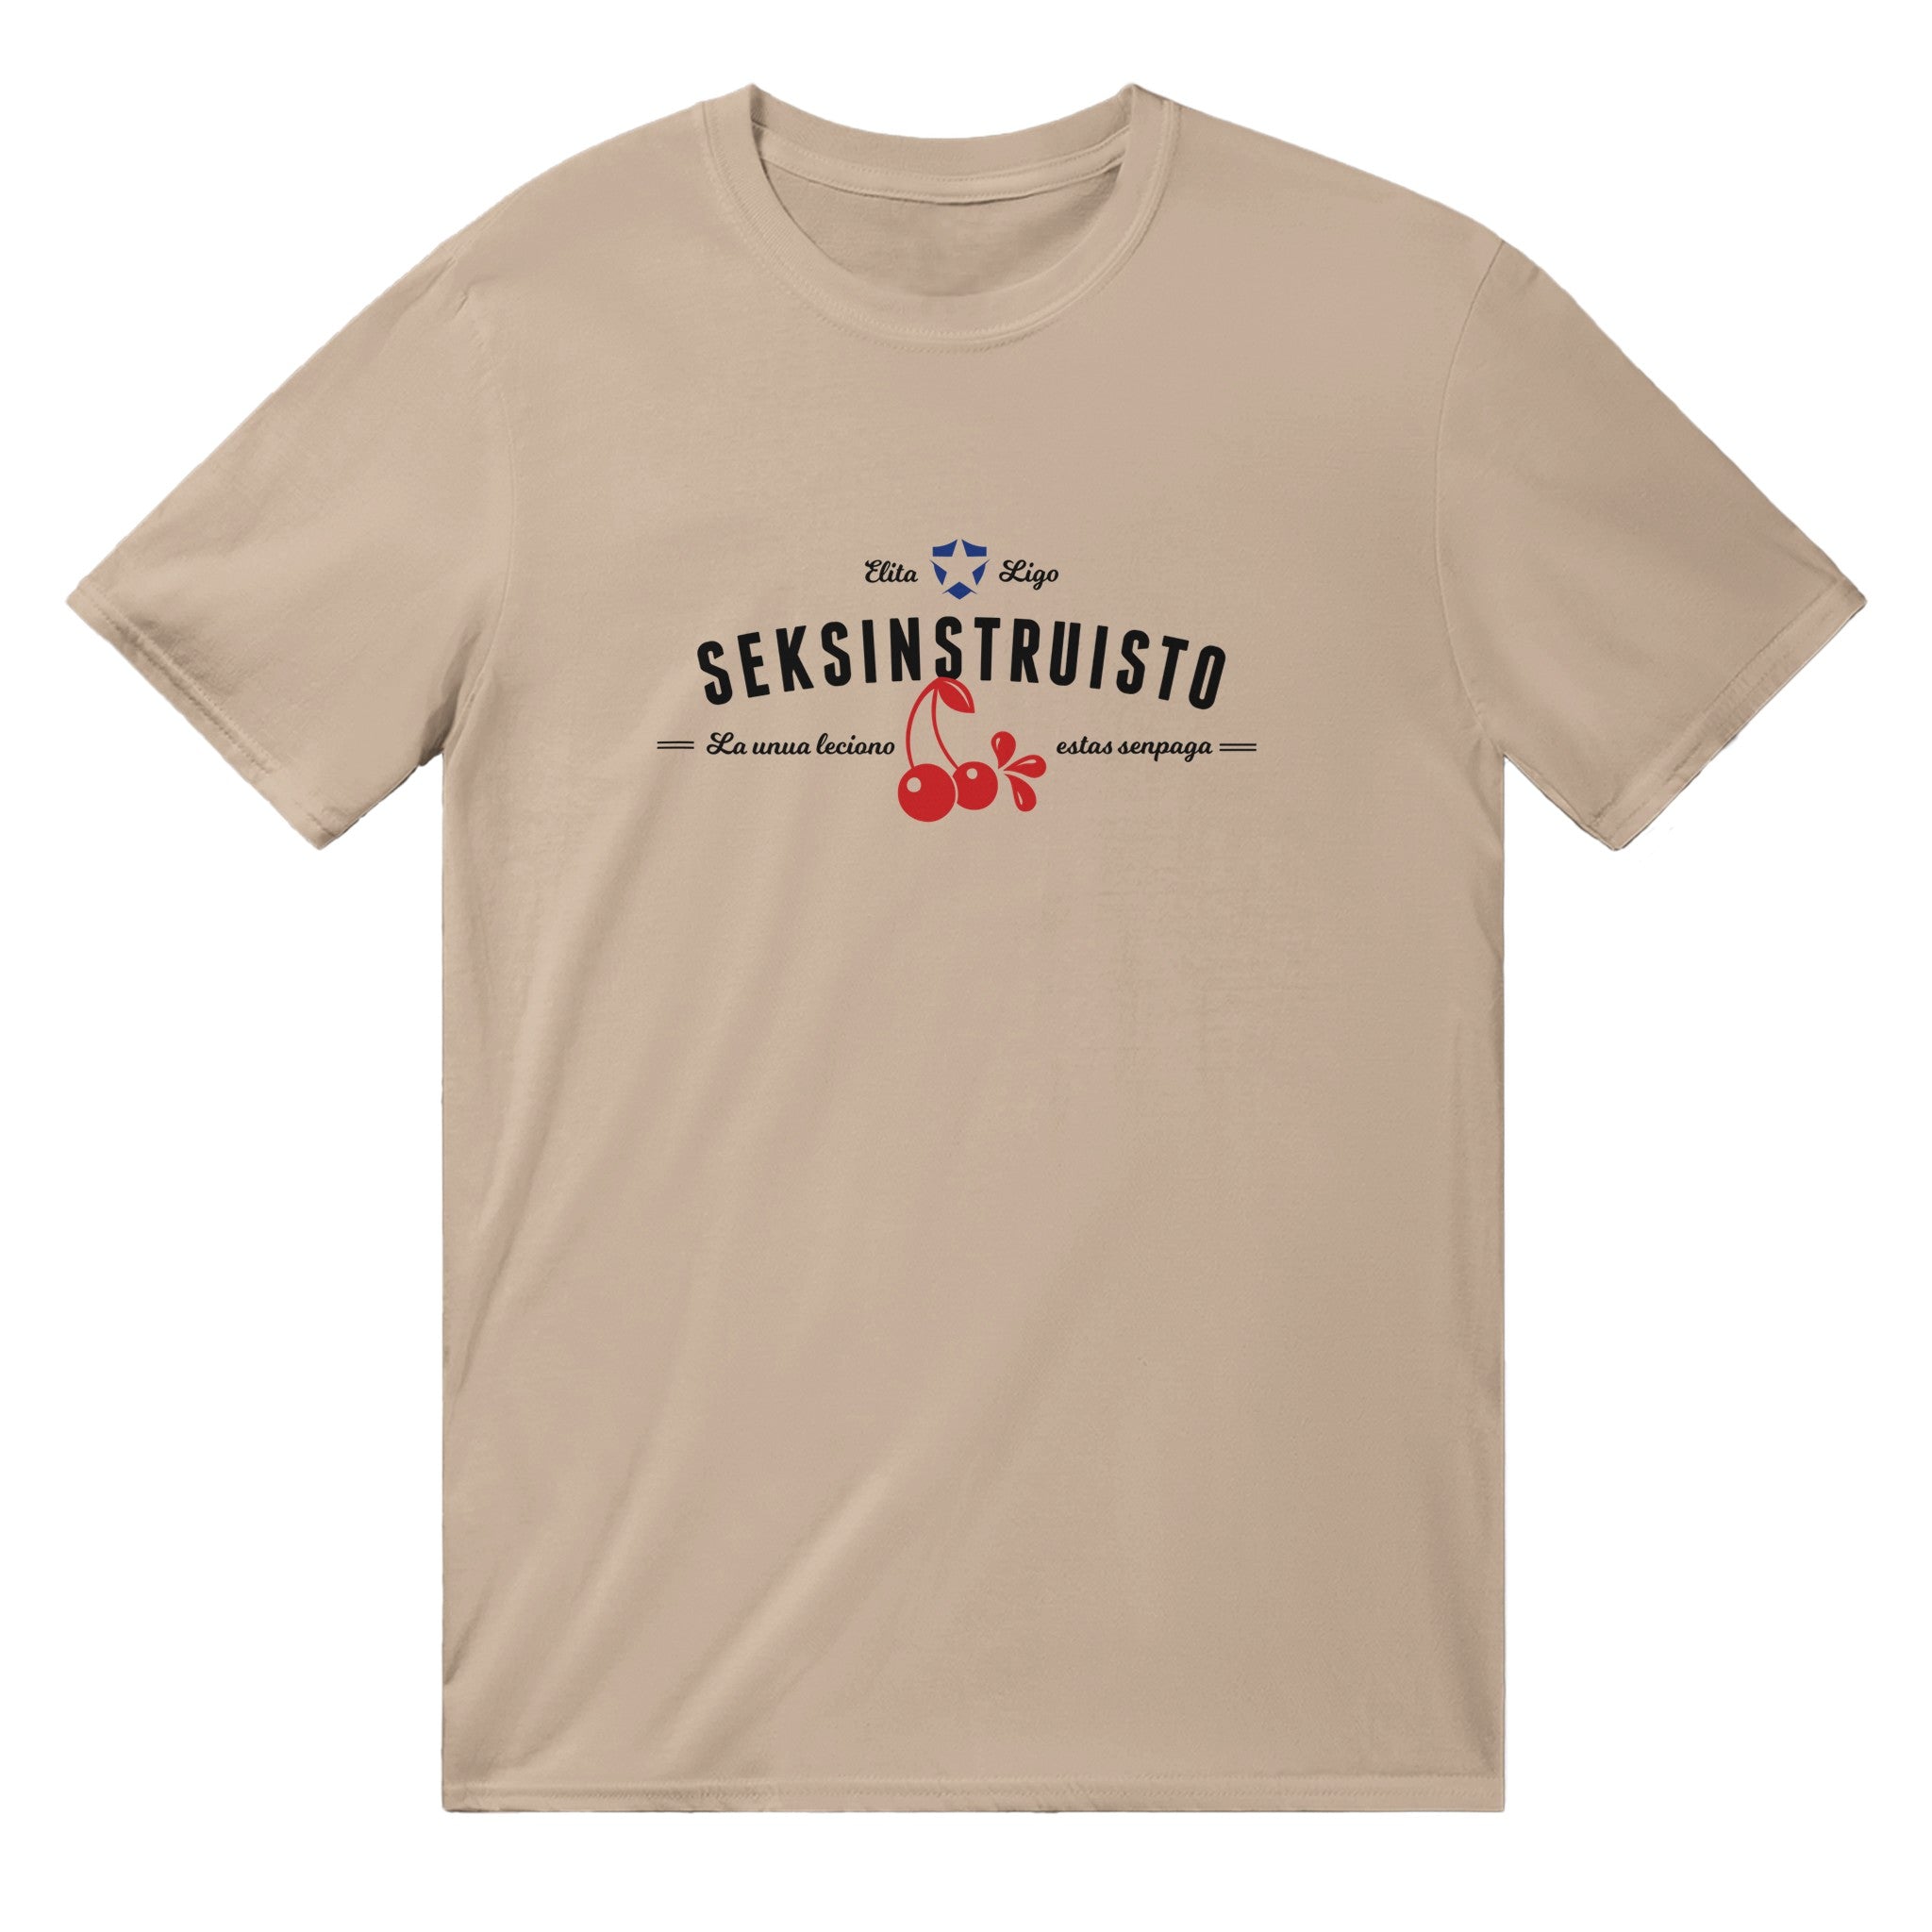 Seksinstruisto Unisex T-shirt